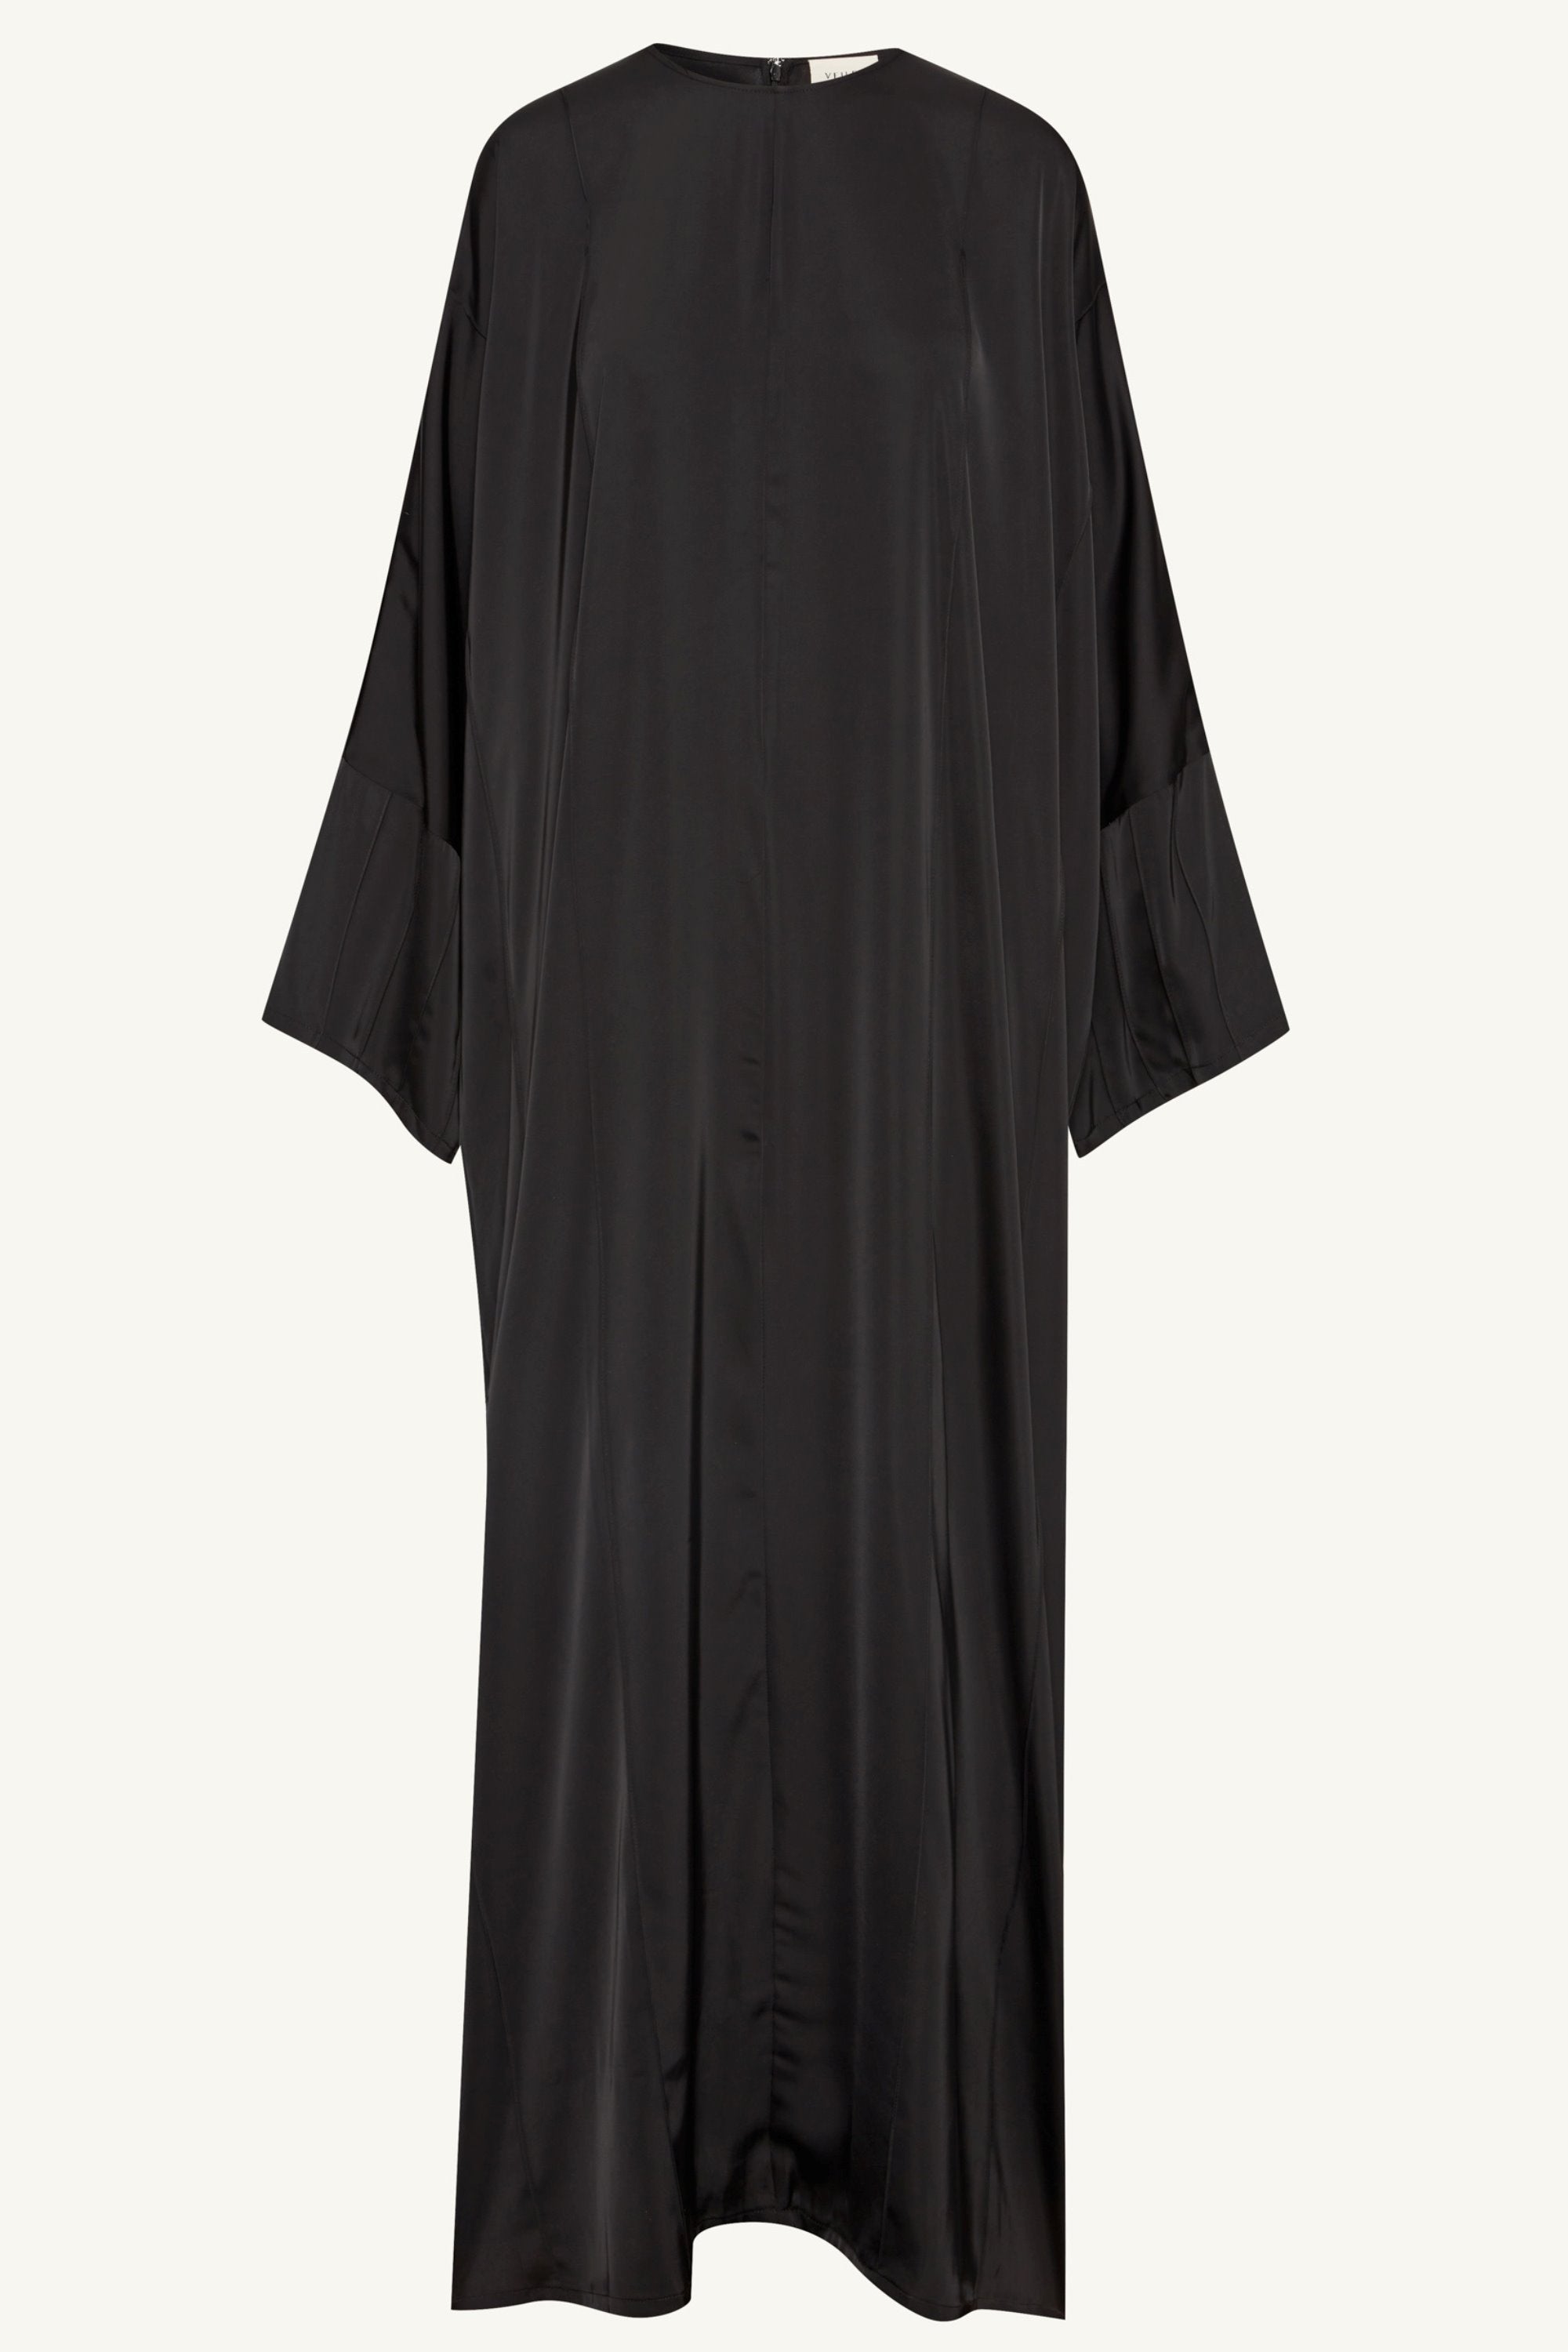 Sidrah Satin Kaftan - Black Clothing Veiled 